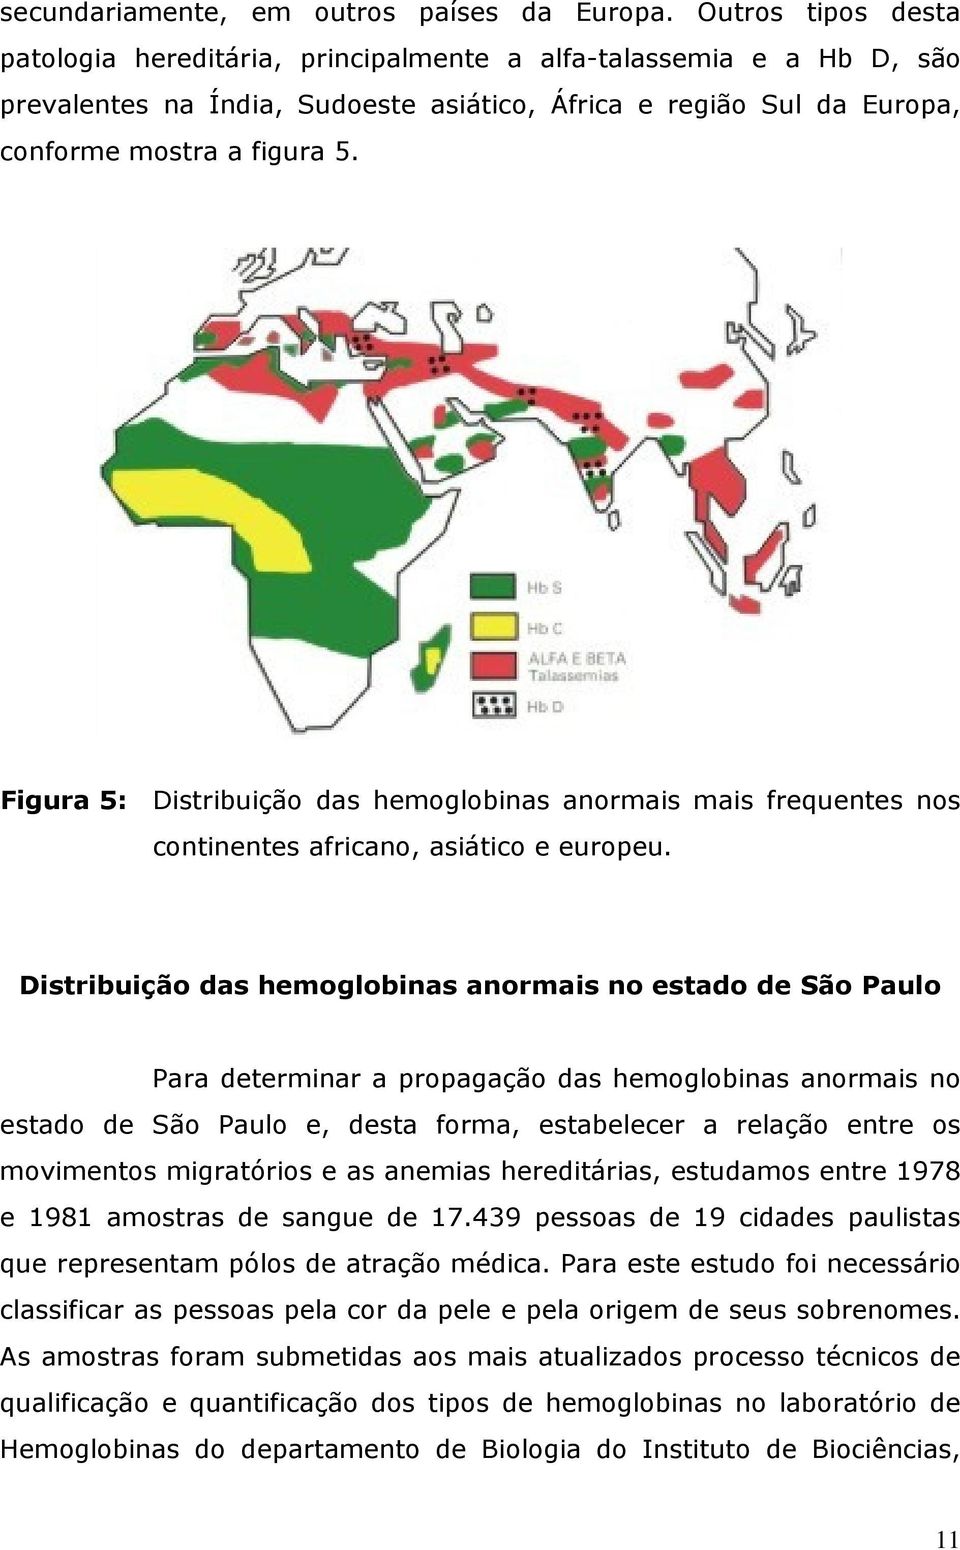 Figura 5: Distribuição das hemoglobinas anormais mais frequentes nos continentes africano, asiático e europeu.